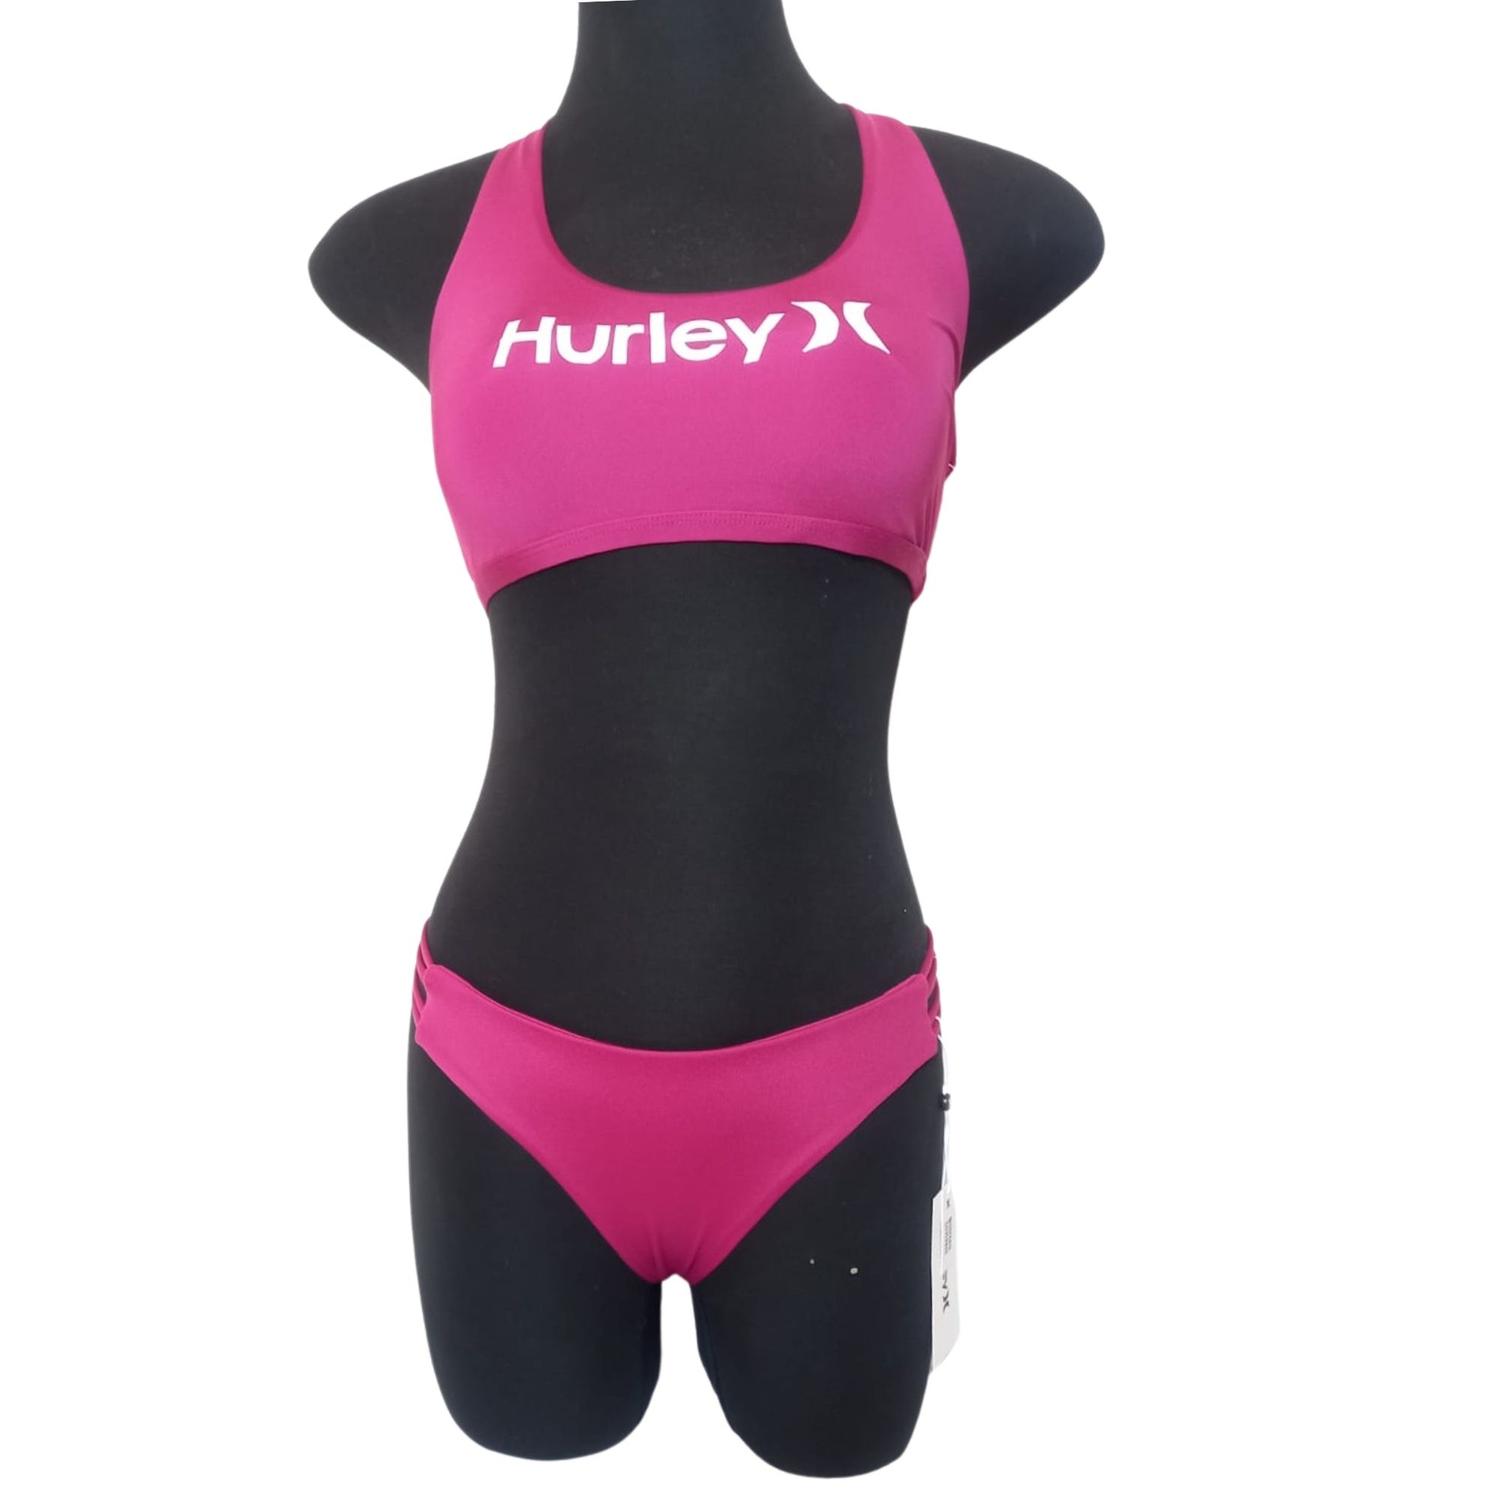 Bikini Hurley Swimsuit - Fucsia - Talla S